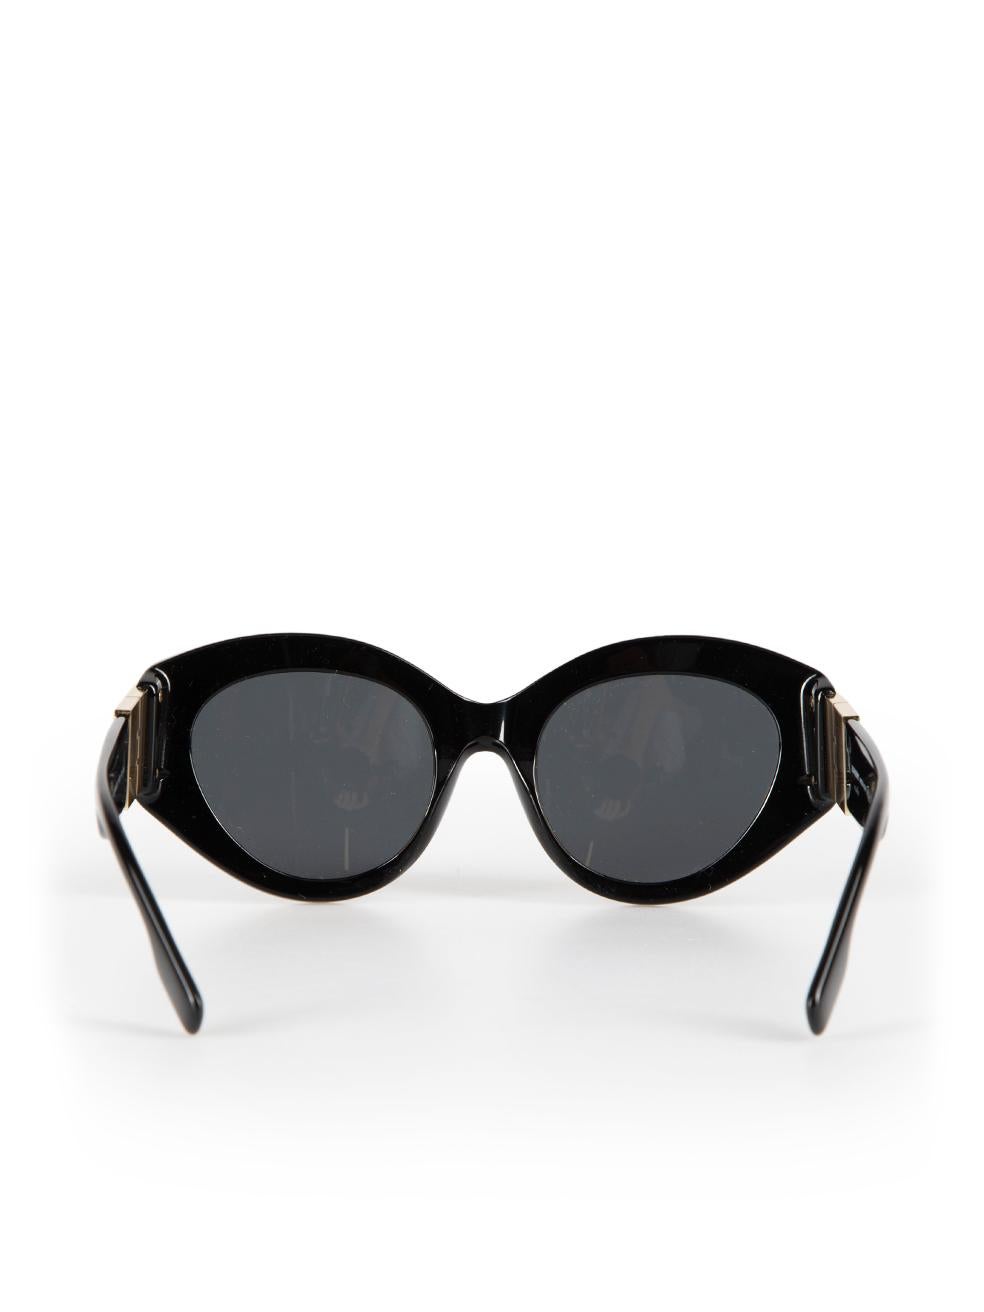 Women's Burberry Black Cat Eye Sophia Sunglasses For Sale